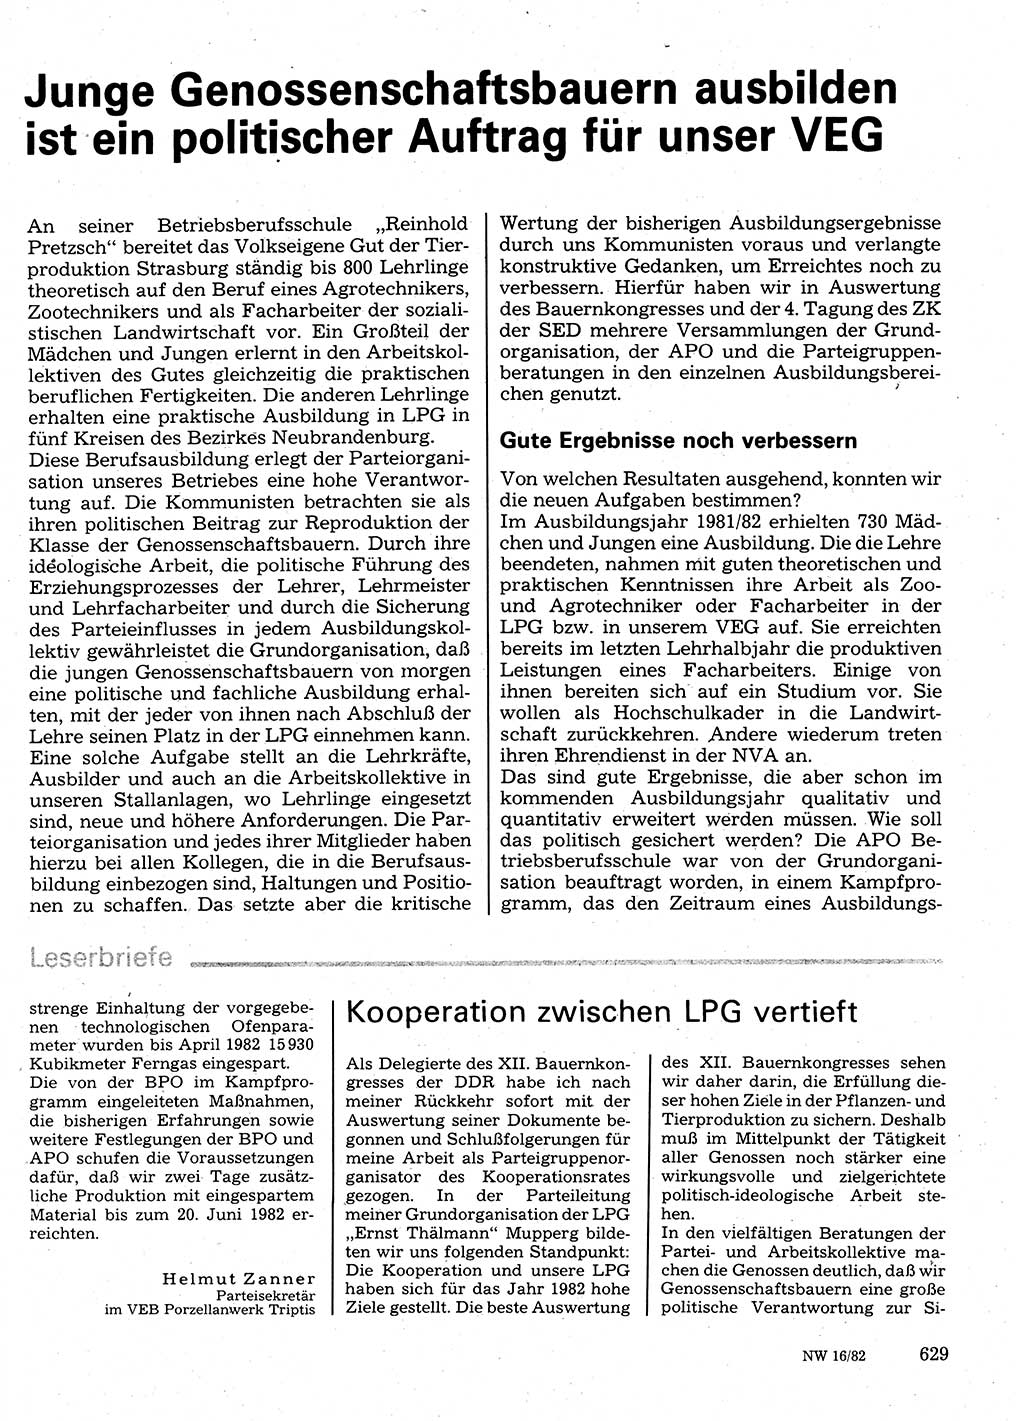 Neuer Weg (NW), Organ des Zentralkomitees (ZK) der SED (Sozialistische Einheitspartei Deutschlands) für Fragen des Parteilebens, 37. Jahrgang [Deutsche Demokratische Republik (DDR)] 1982, Seite 629 (NW ZK SED DDR 1982, S. 629)